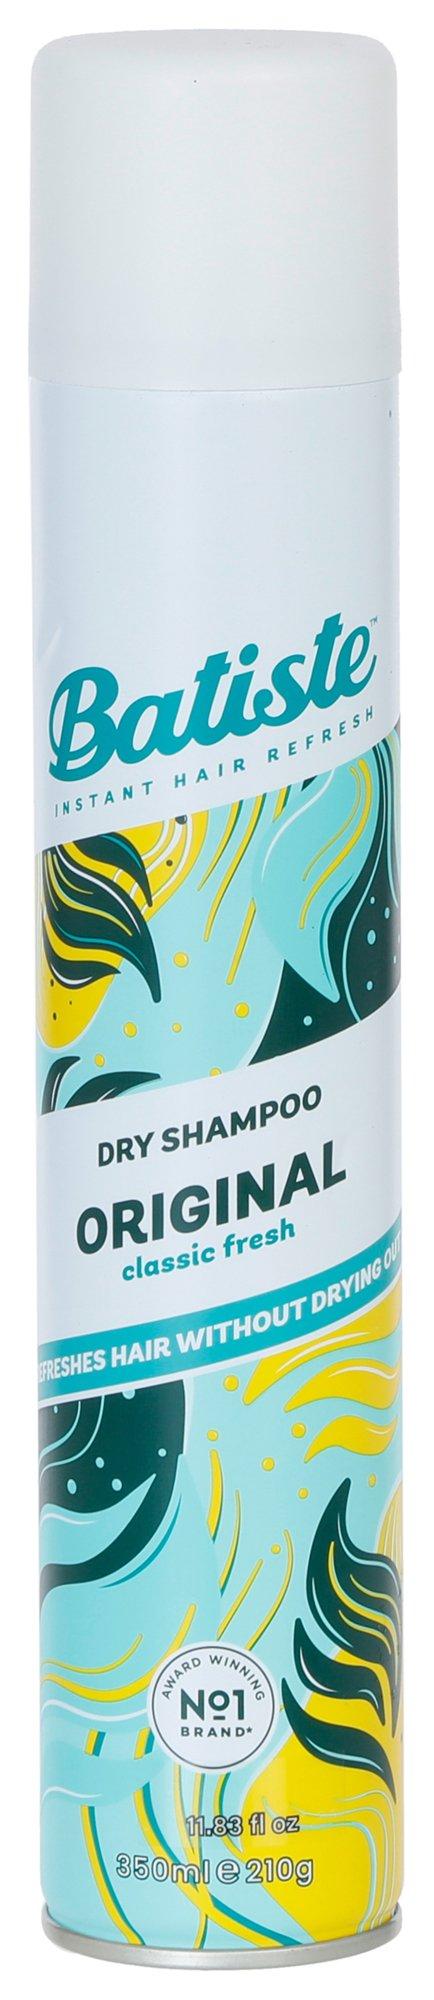 11 oz Original Classic Fresh Dry Shampoo